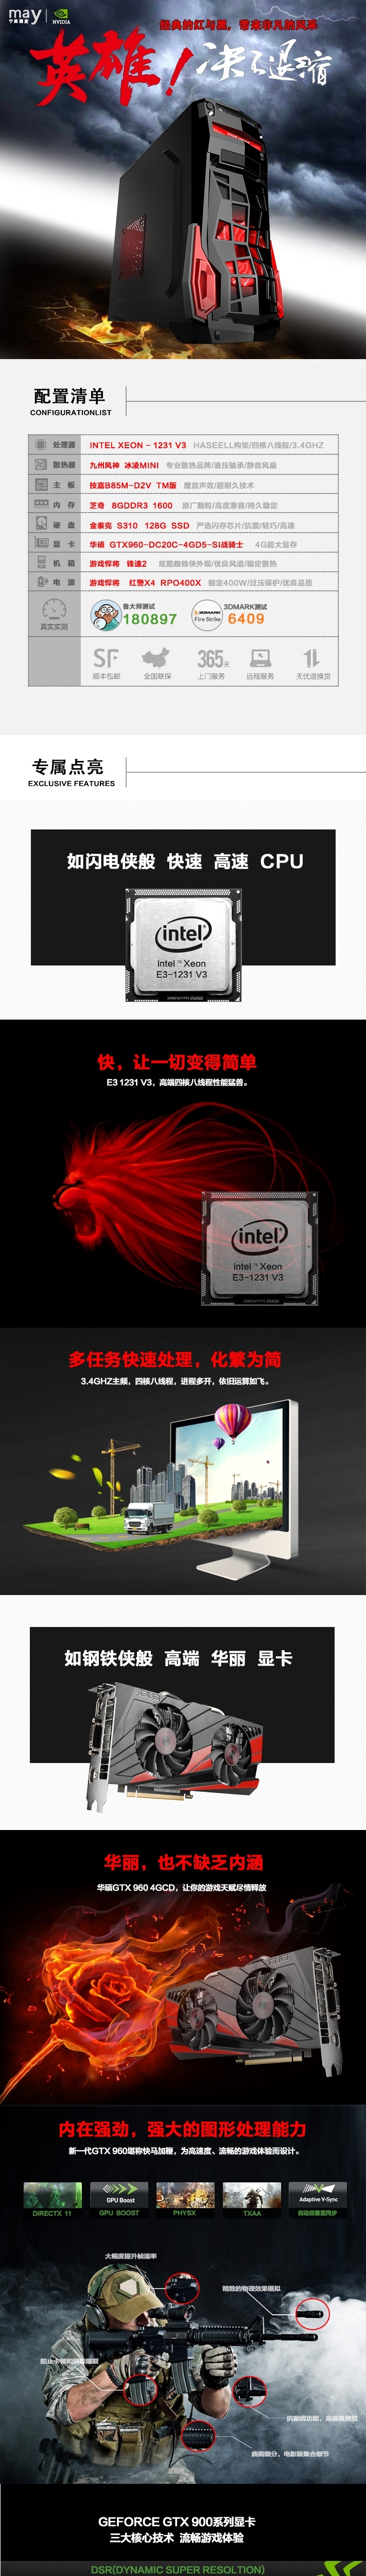 淘宝美工袁城台式电脑游戏组装主机整机作品